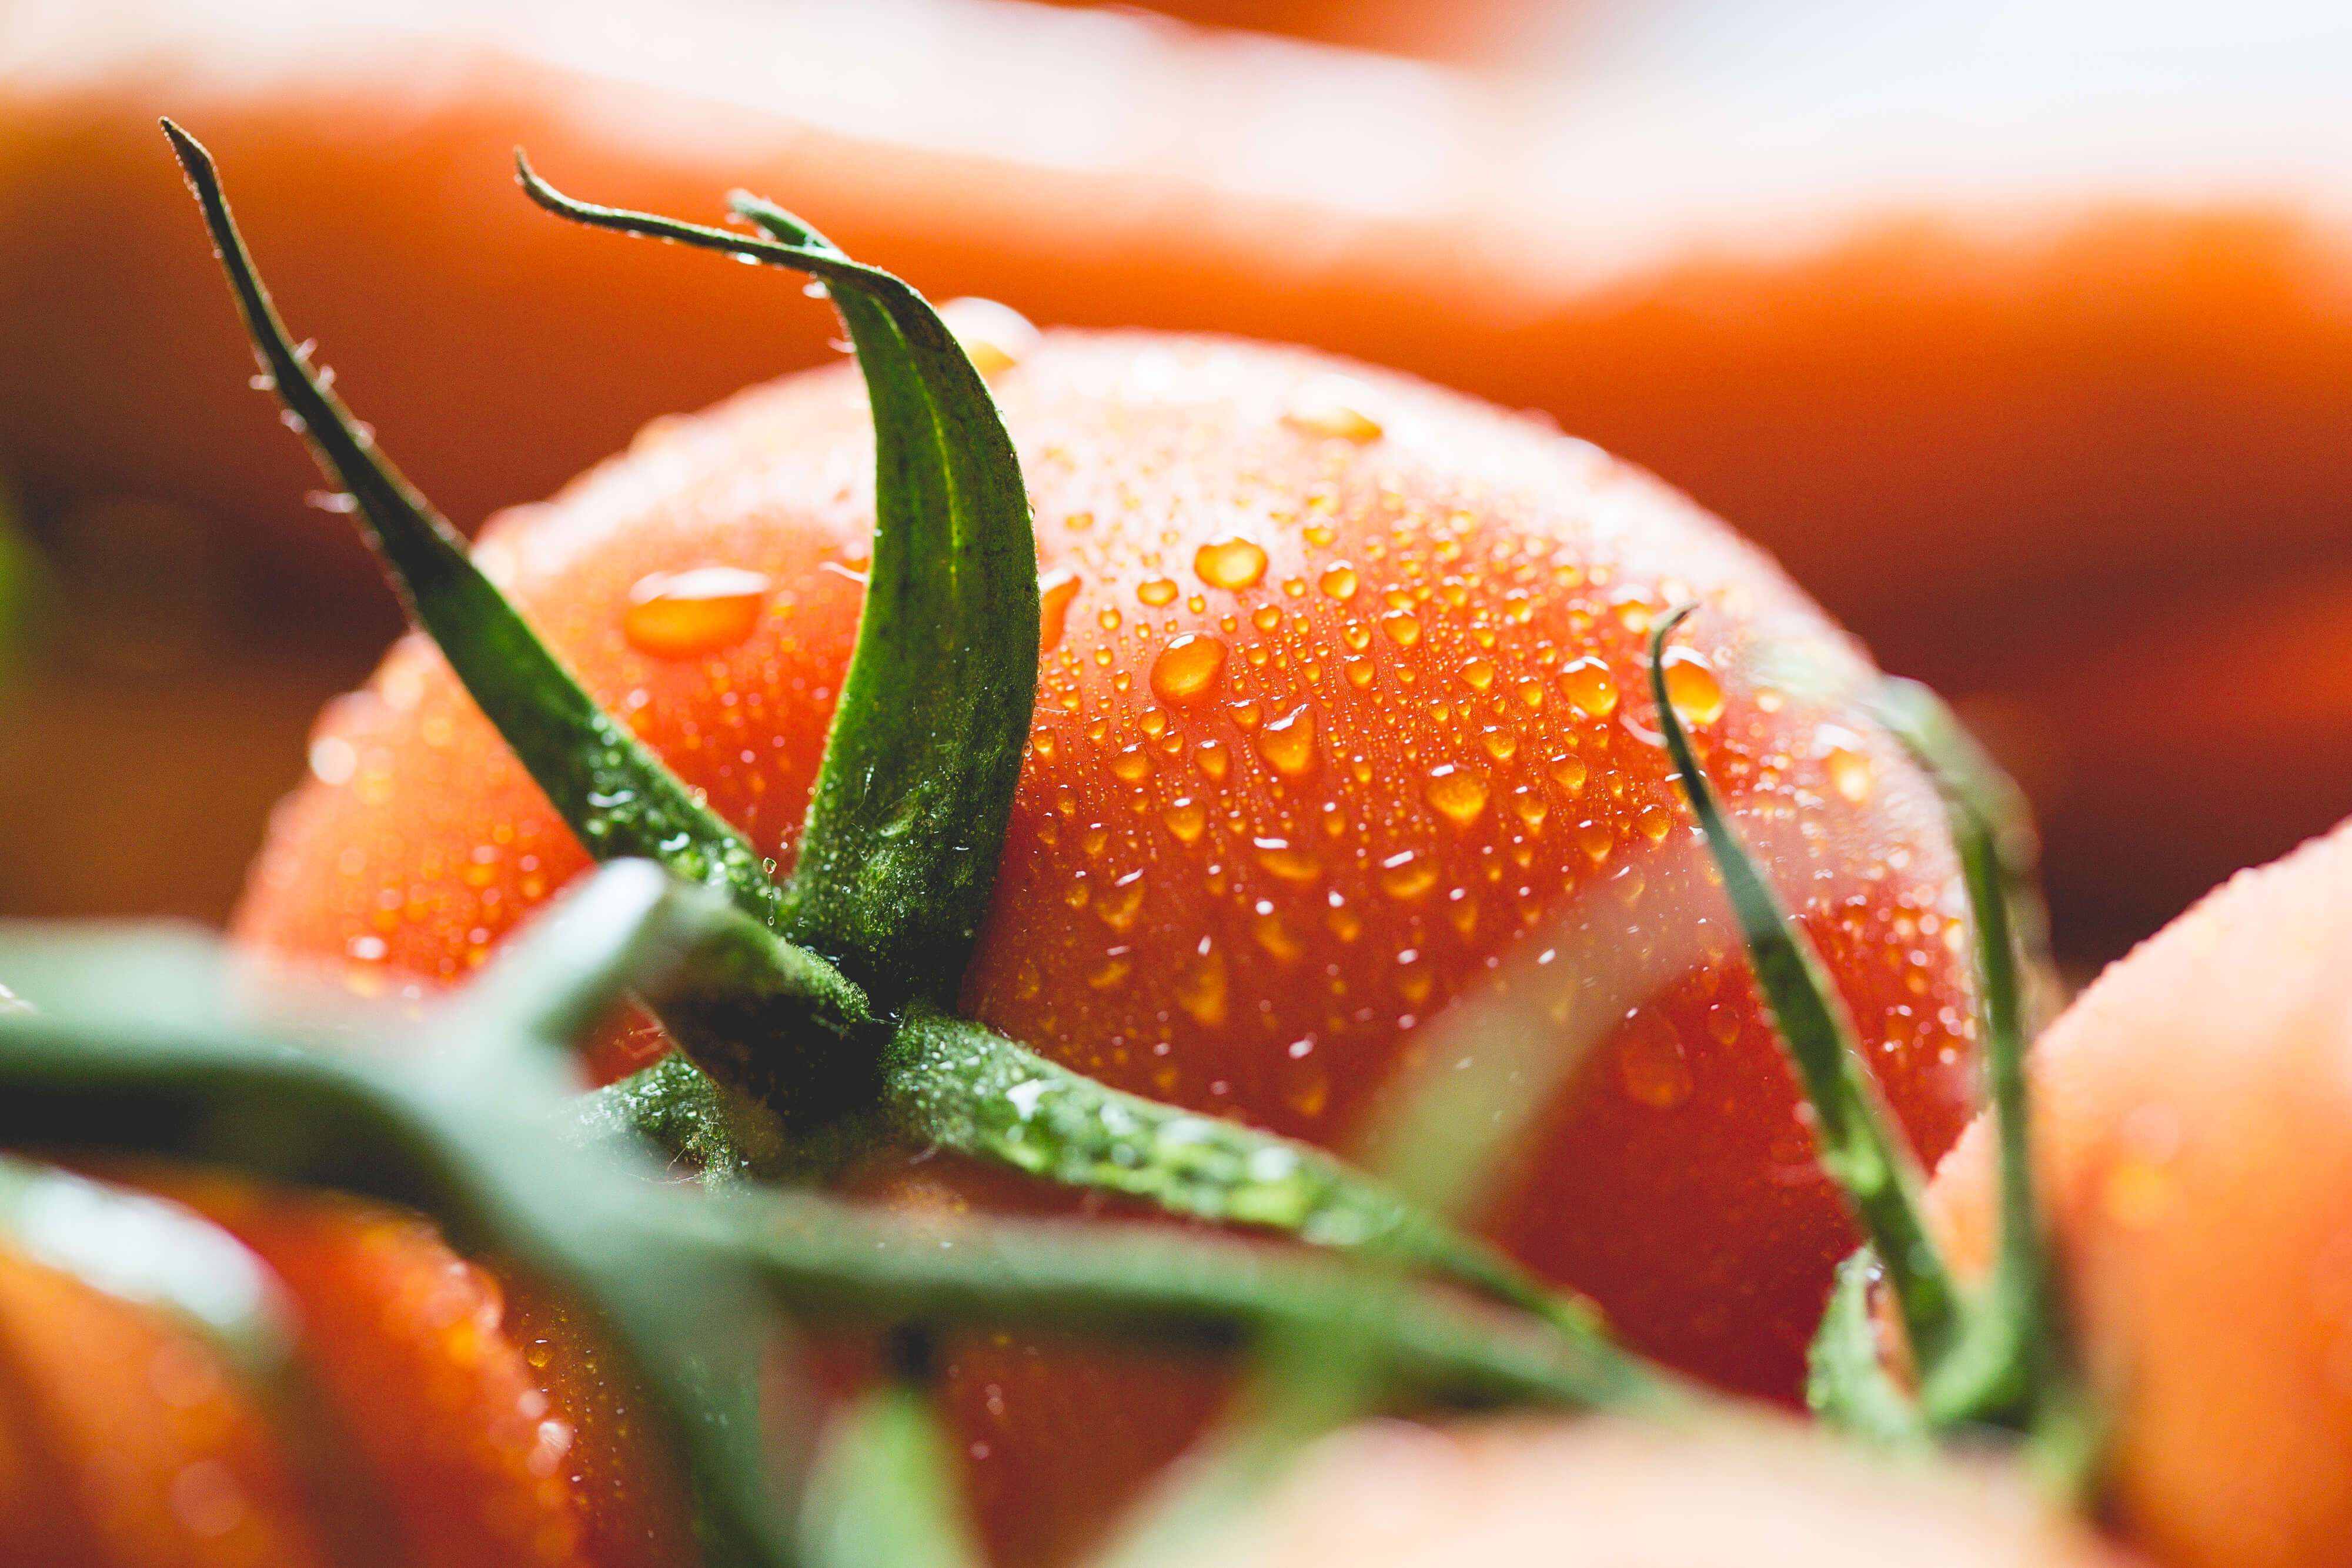 pomidor: poleznye svojjstva i pravila upotrebleniya25 Помідор: корисні властивості і правила вживання